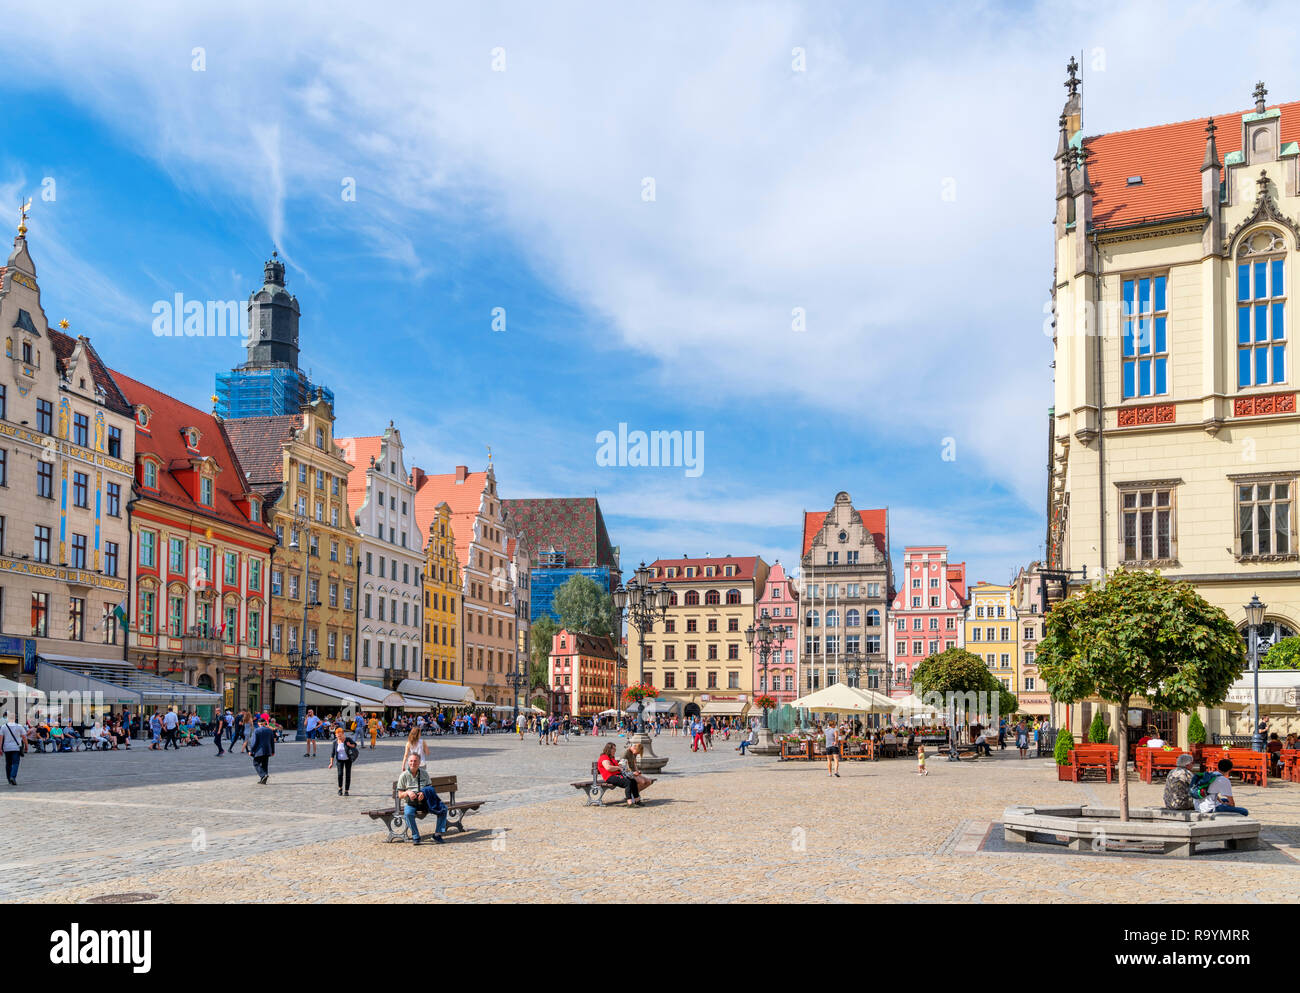 Wroclaw, la Ciudad Vieja (Stare Miasto). Las tiendas y cafeterías de la plaza del mercado (Rynek nos Wrocławiu), Wroclaw, Silesia, Polonia Foto de stock